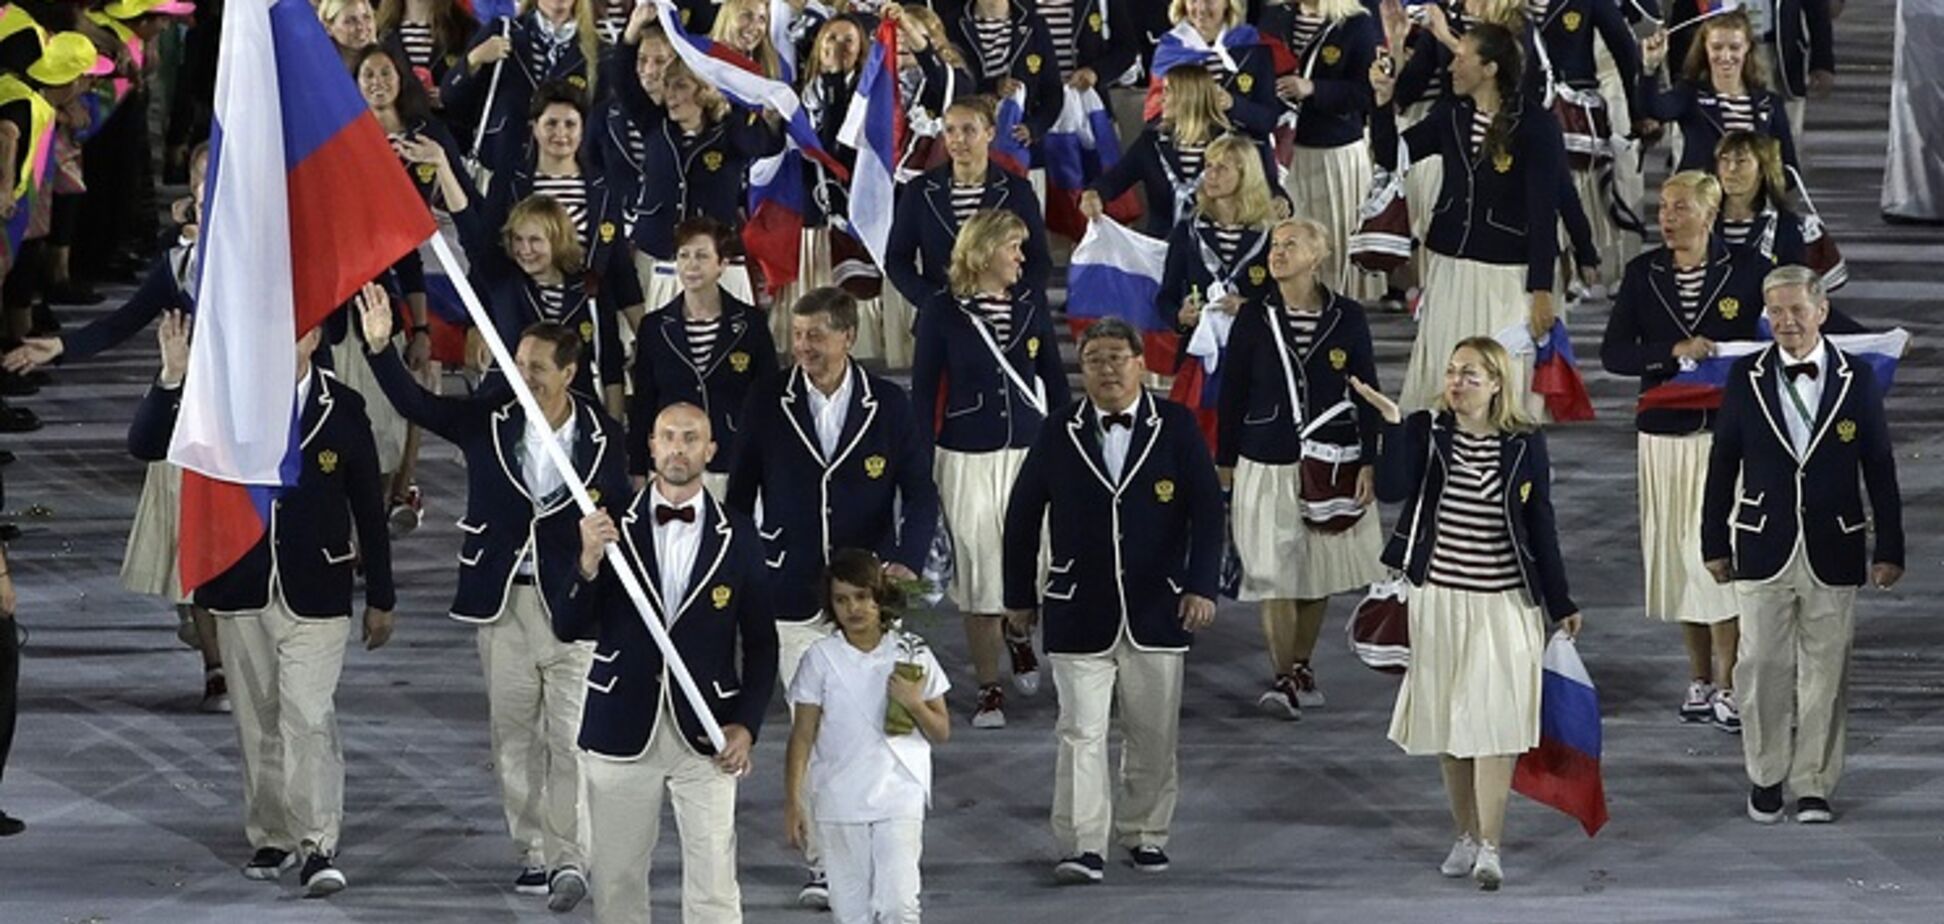 'Это плевок!' В Германии возмутились допуском российских спортсменов к Олимпиаде-2018